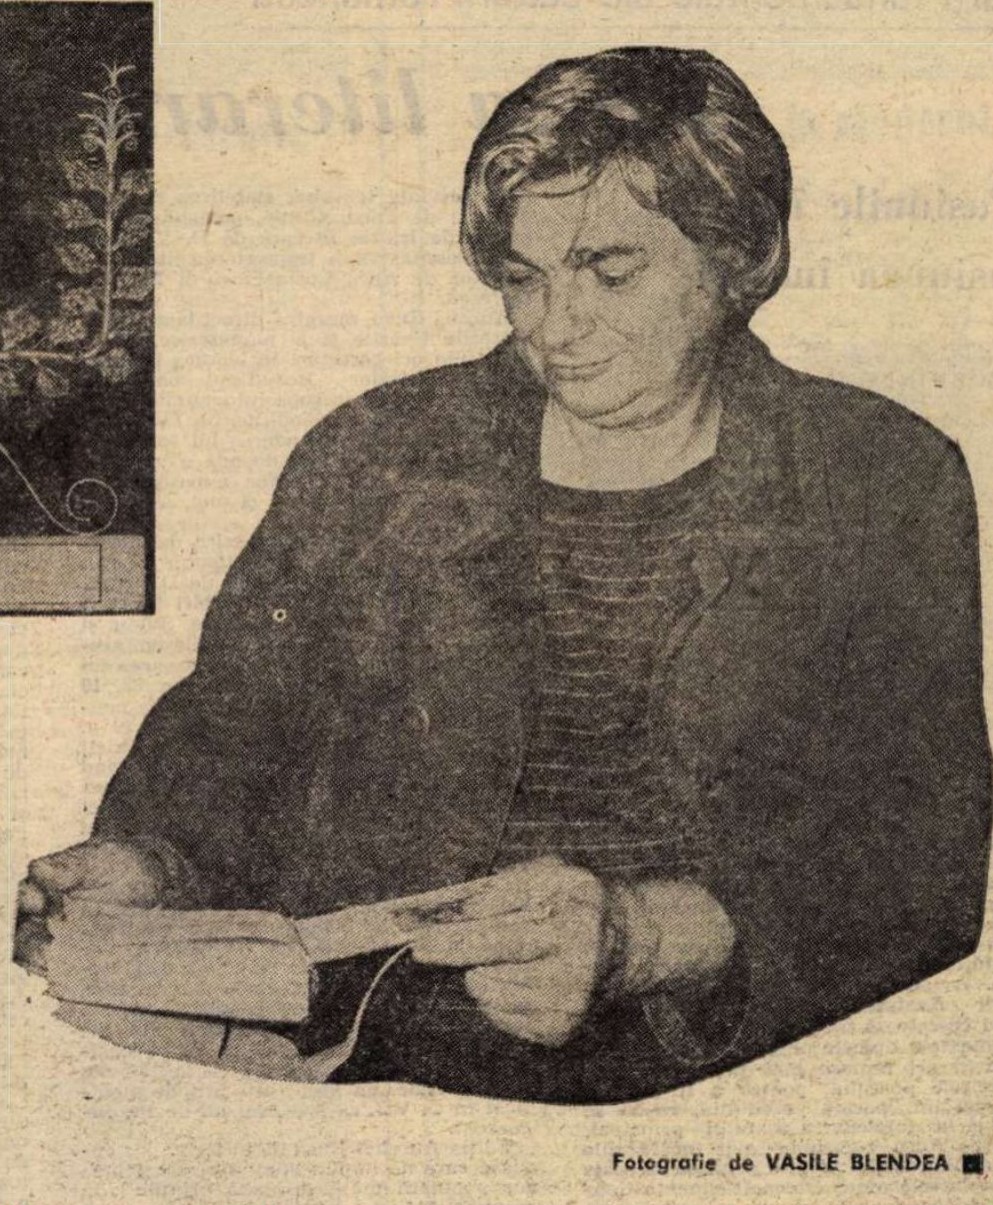 Nichita Stănescu